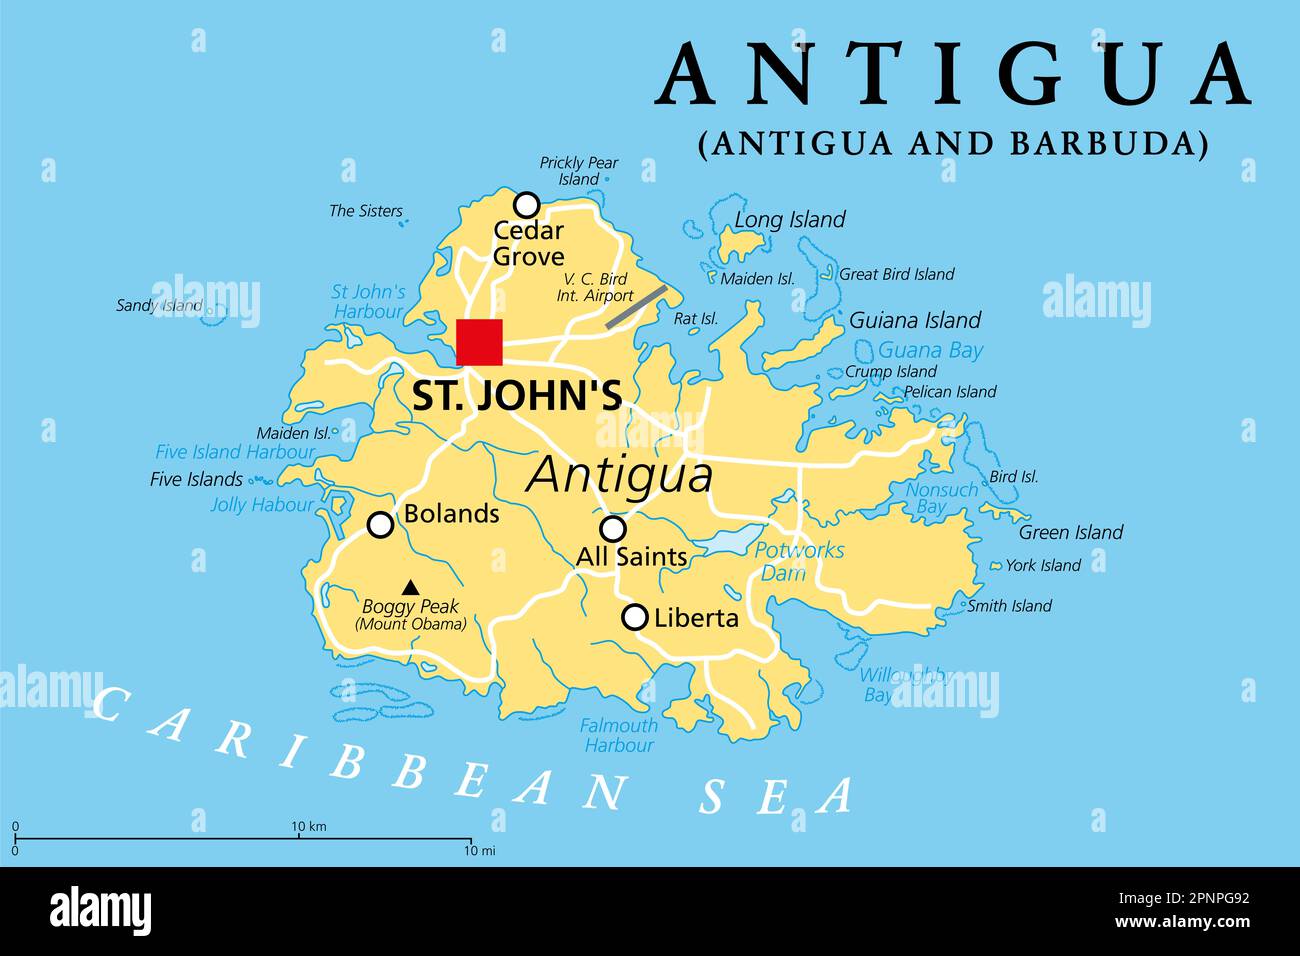 Antigua, île dans les Petites Antilles, carte politique. L'une des îles Leeward dans la région des Caraïbes et l'île la plus peuplée du pays. Banque D'Images